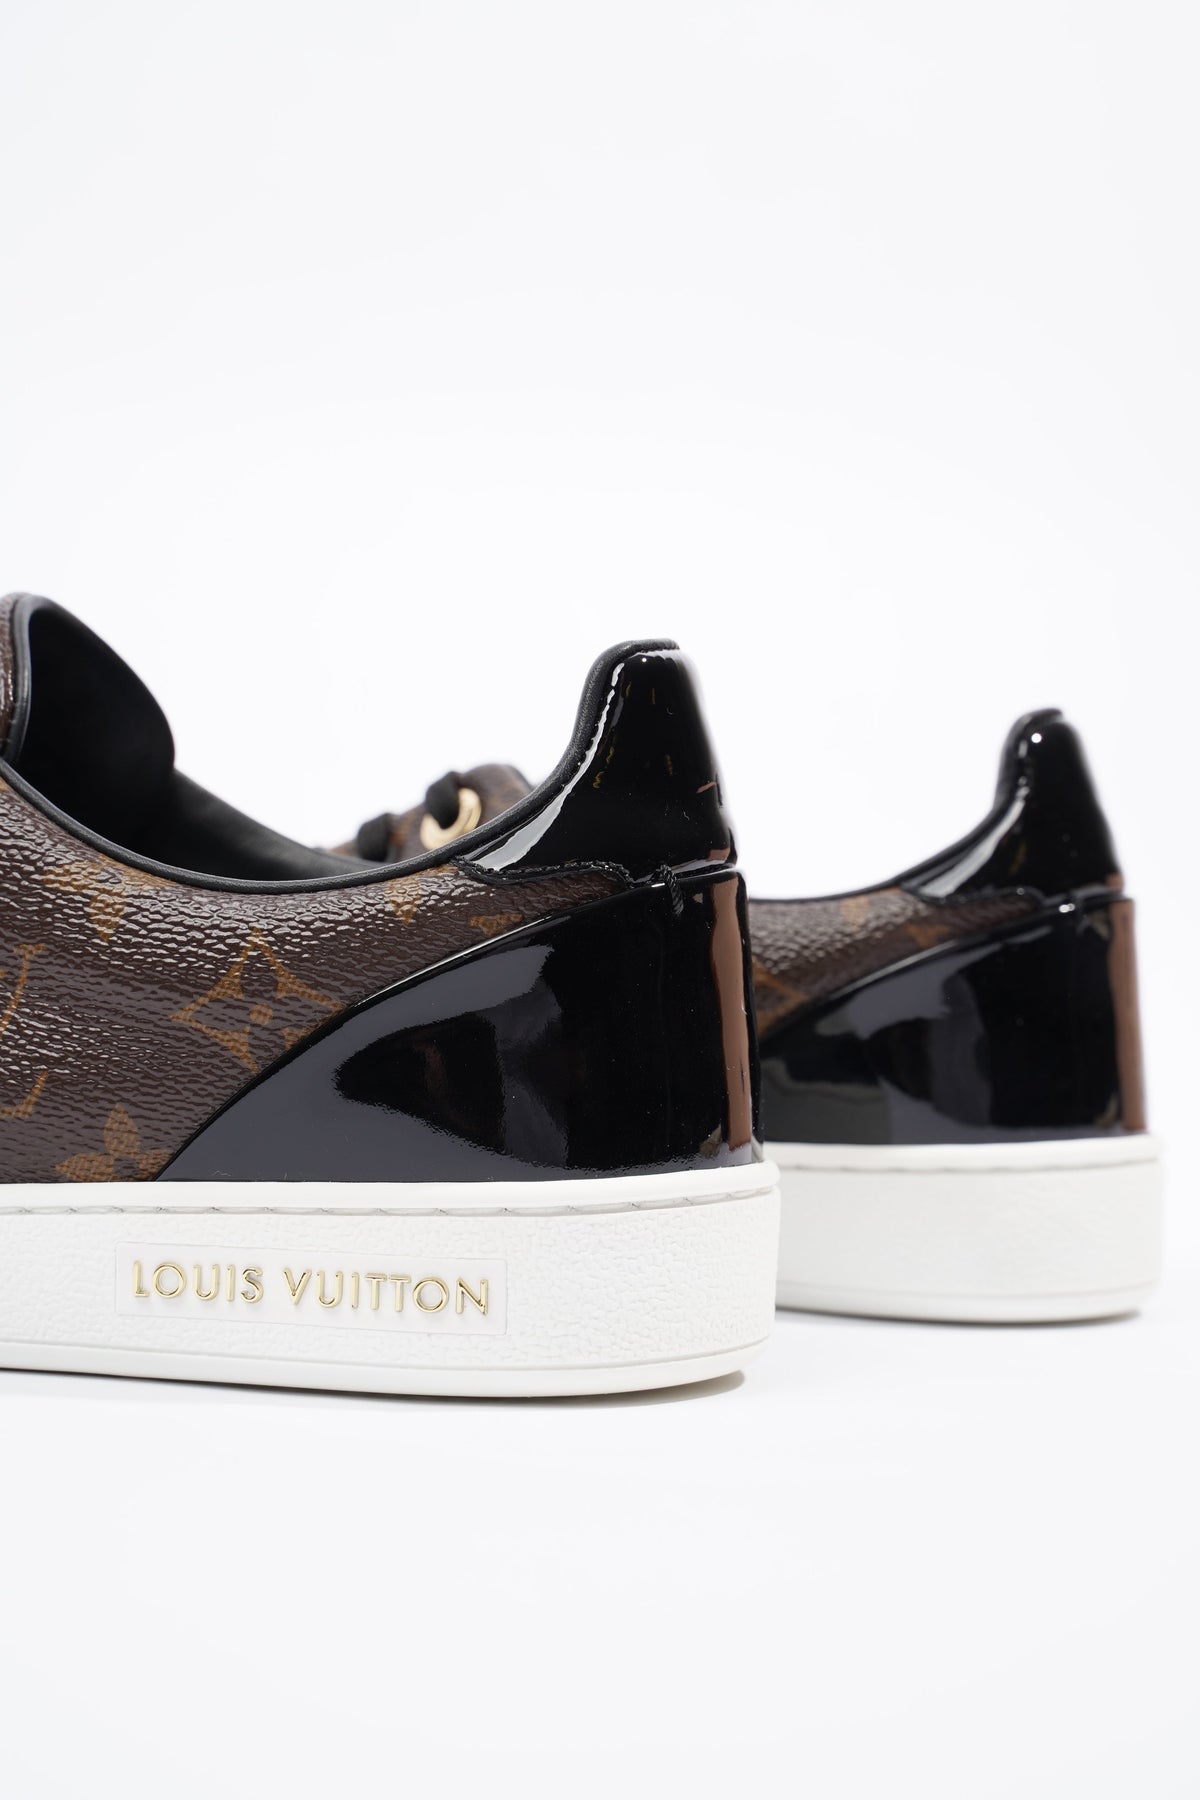 Louis Vuitton FRONTROW Sneaker, White, 40